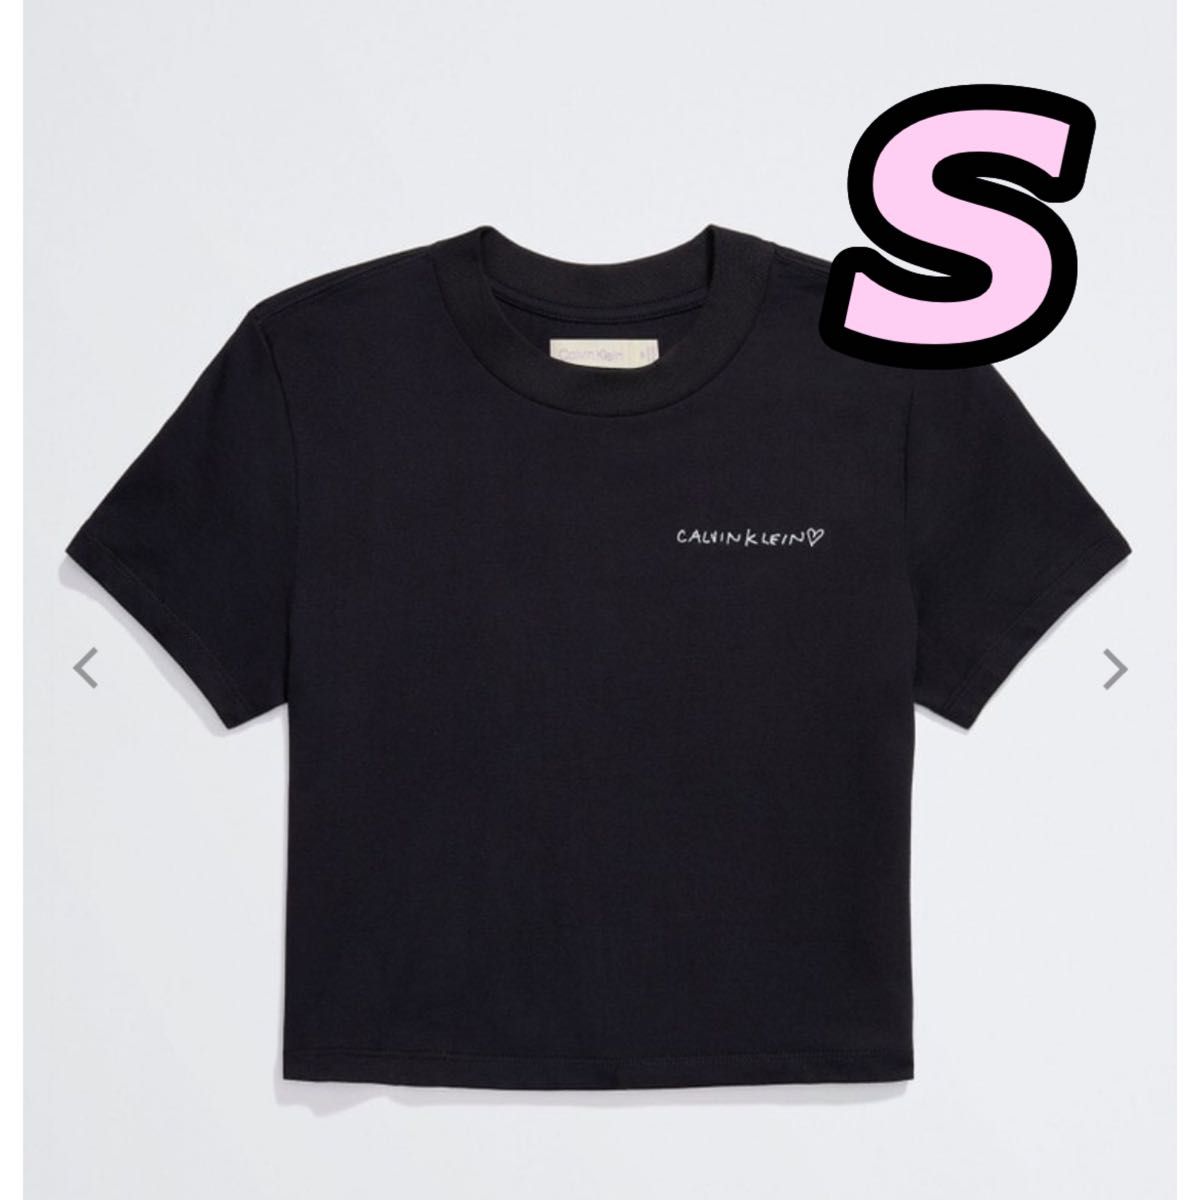 Jennie for Calvin Klein コットンジャージーベビーTシャツ blackpink